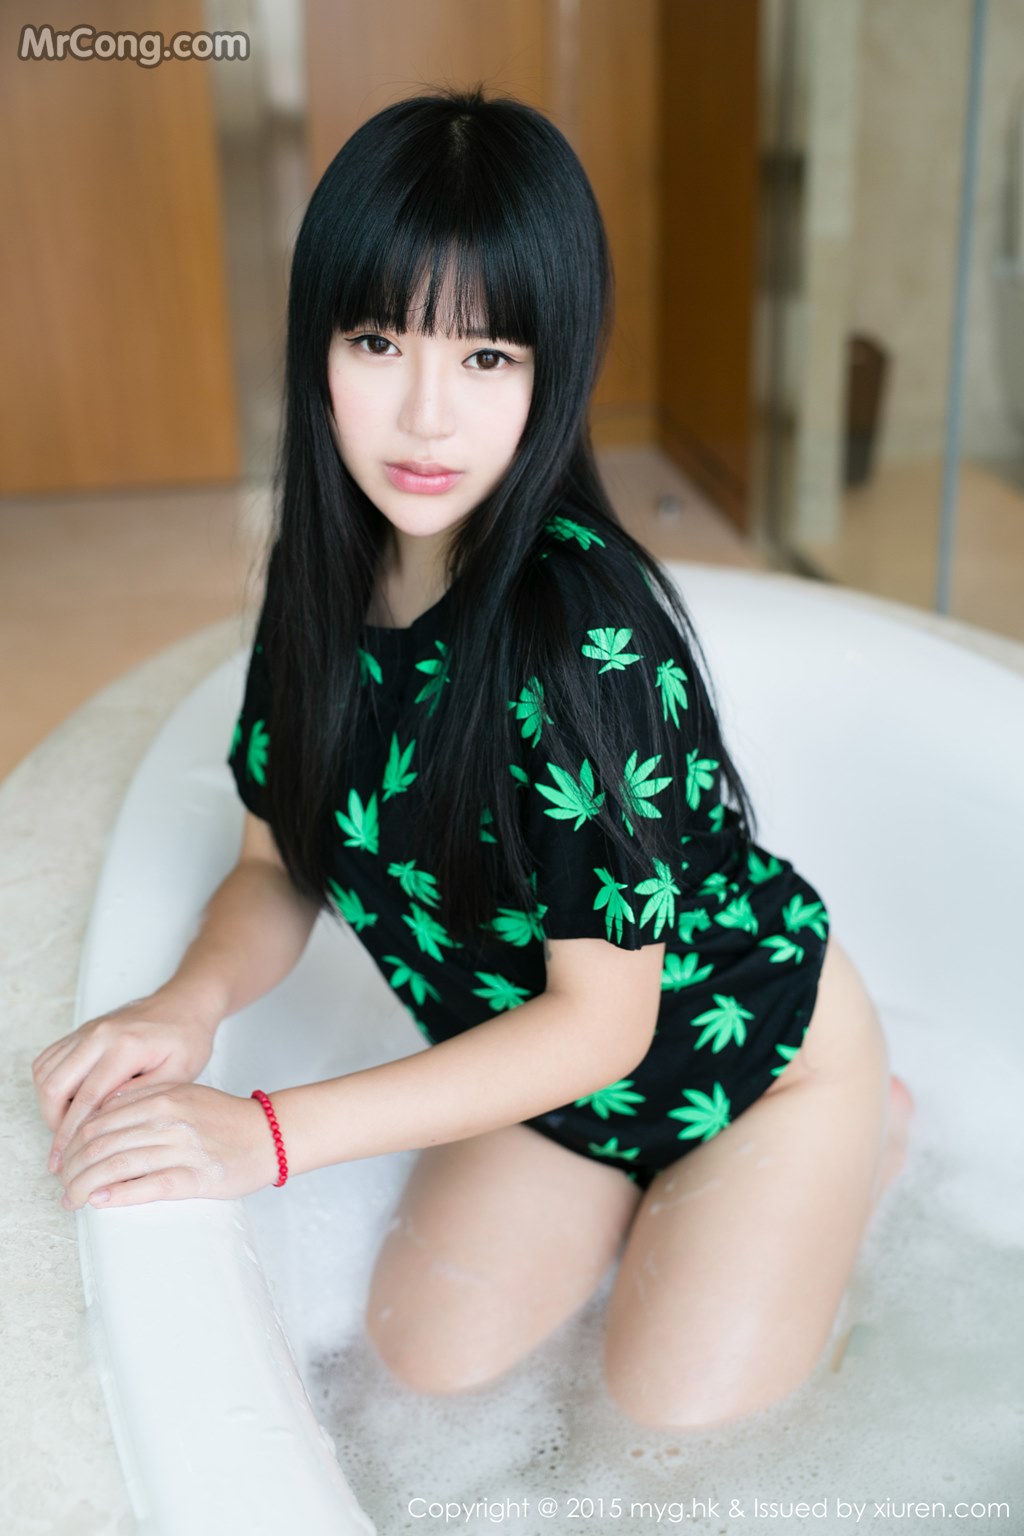 MyGirl Vol.092: Models Ba Bao icey (八宝 icey) and Fiona (伊 雨 蔓) (42 photos)